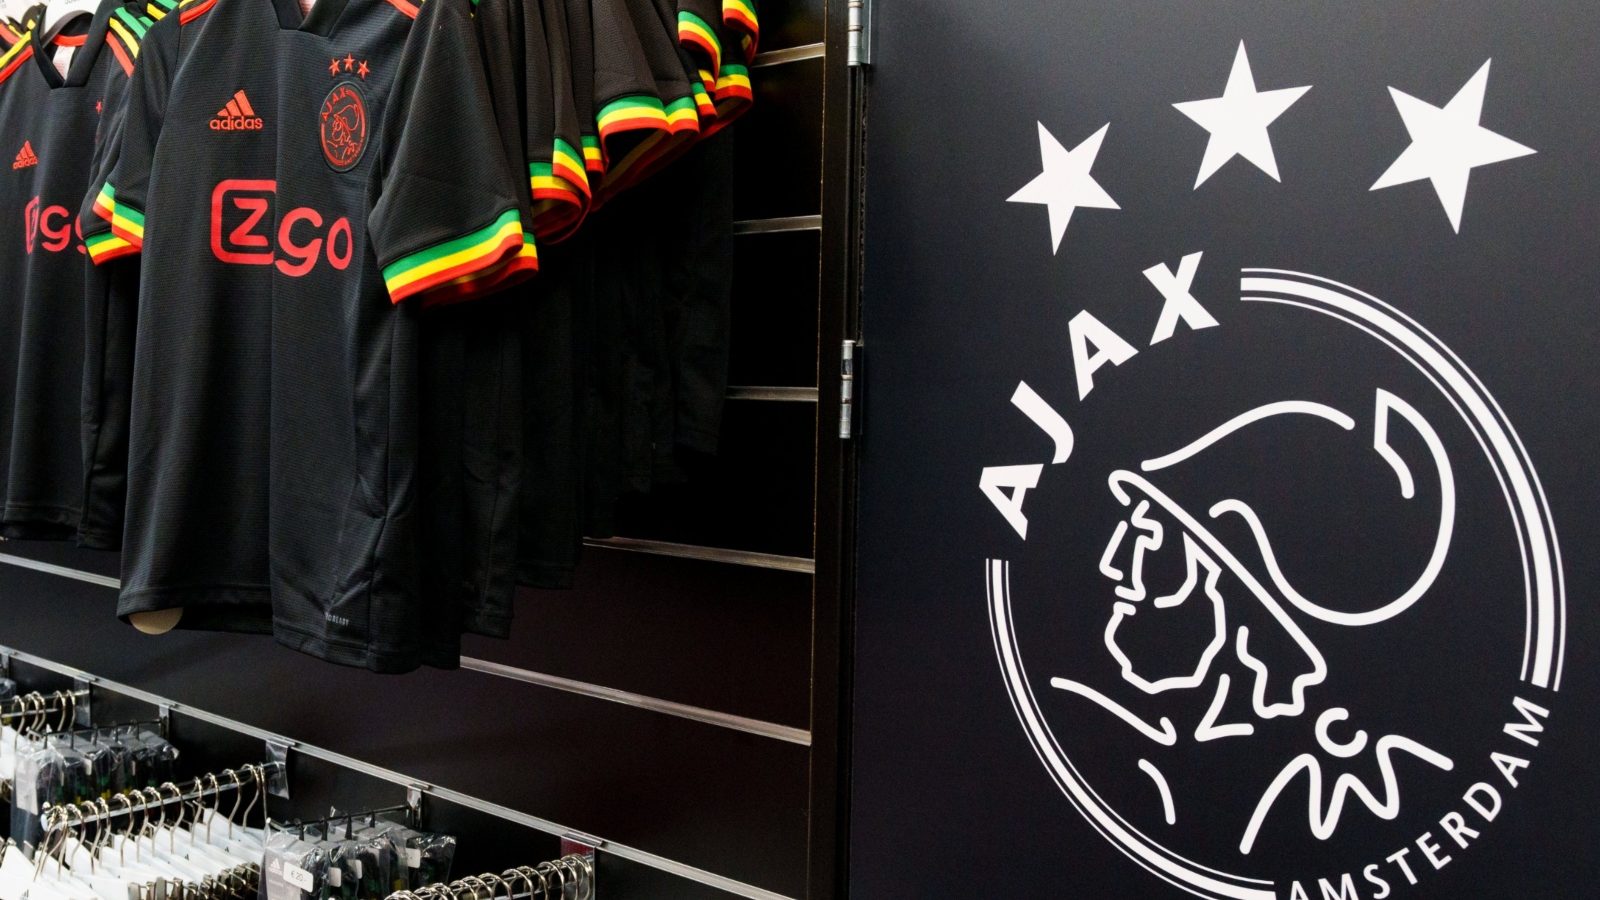 Ajax Website Crashed Minutes After Release of Bob Marley ...